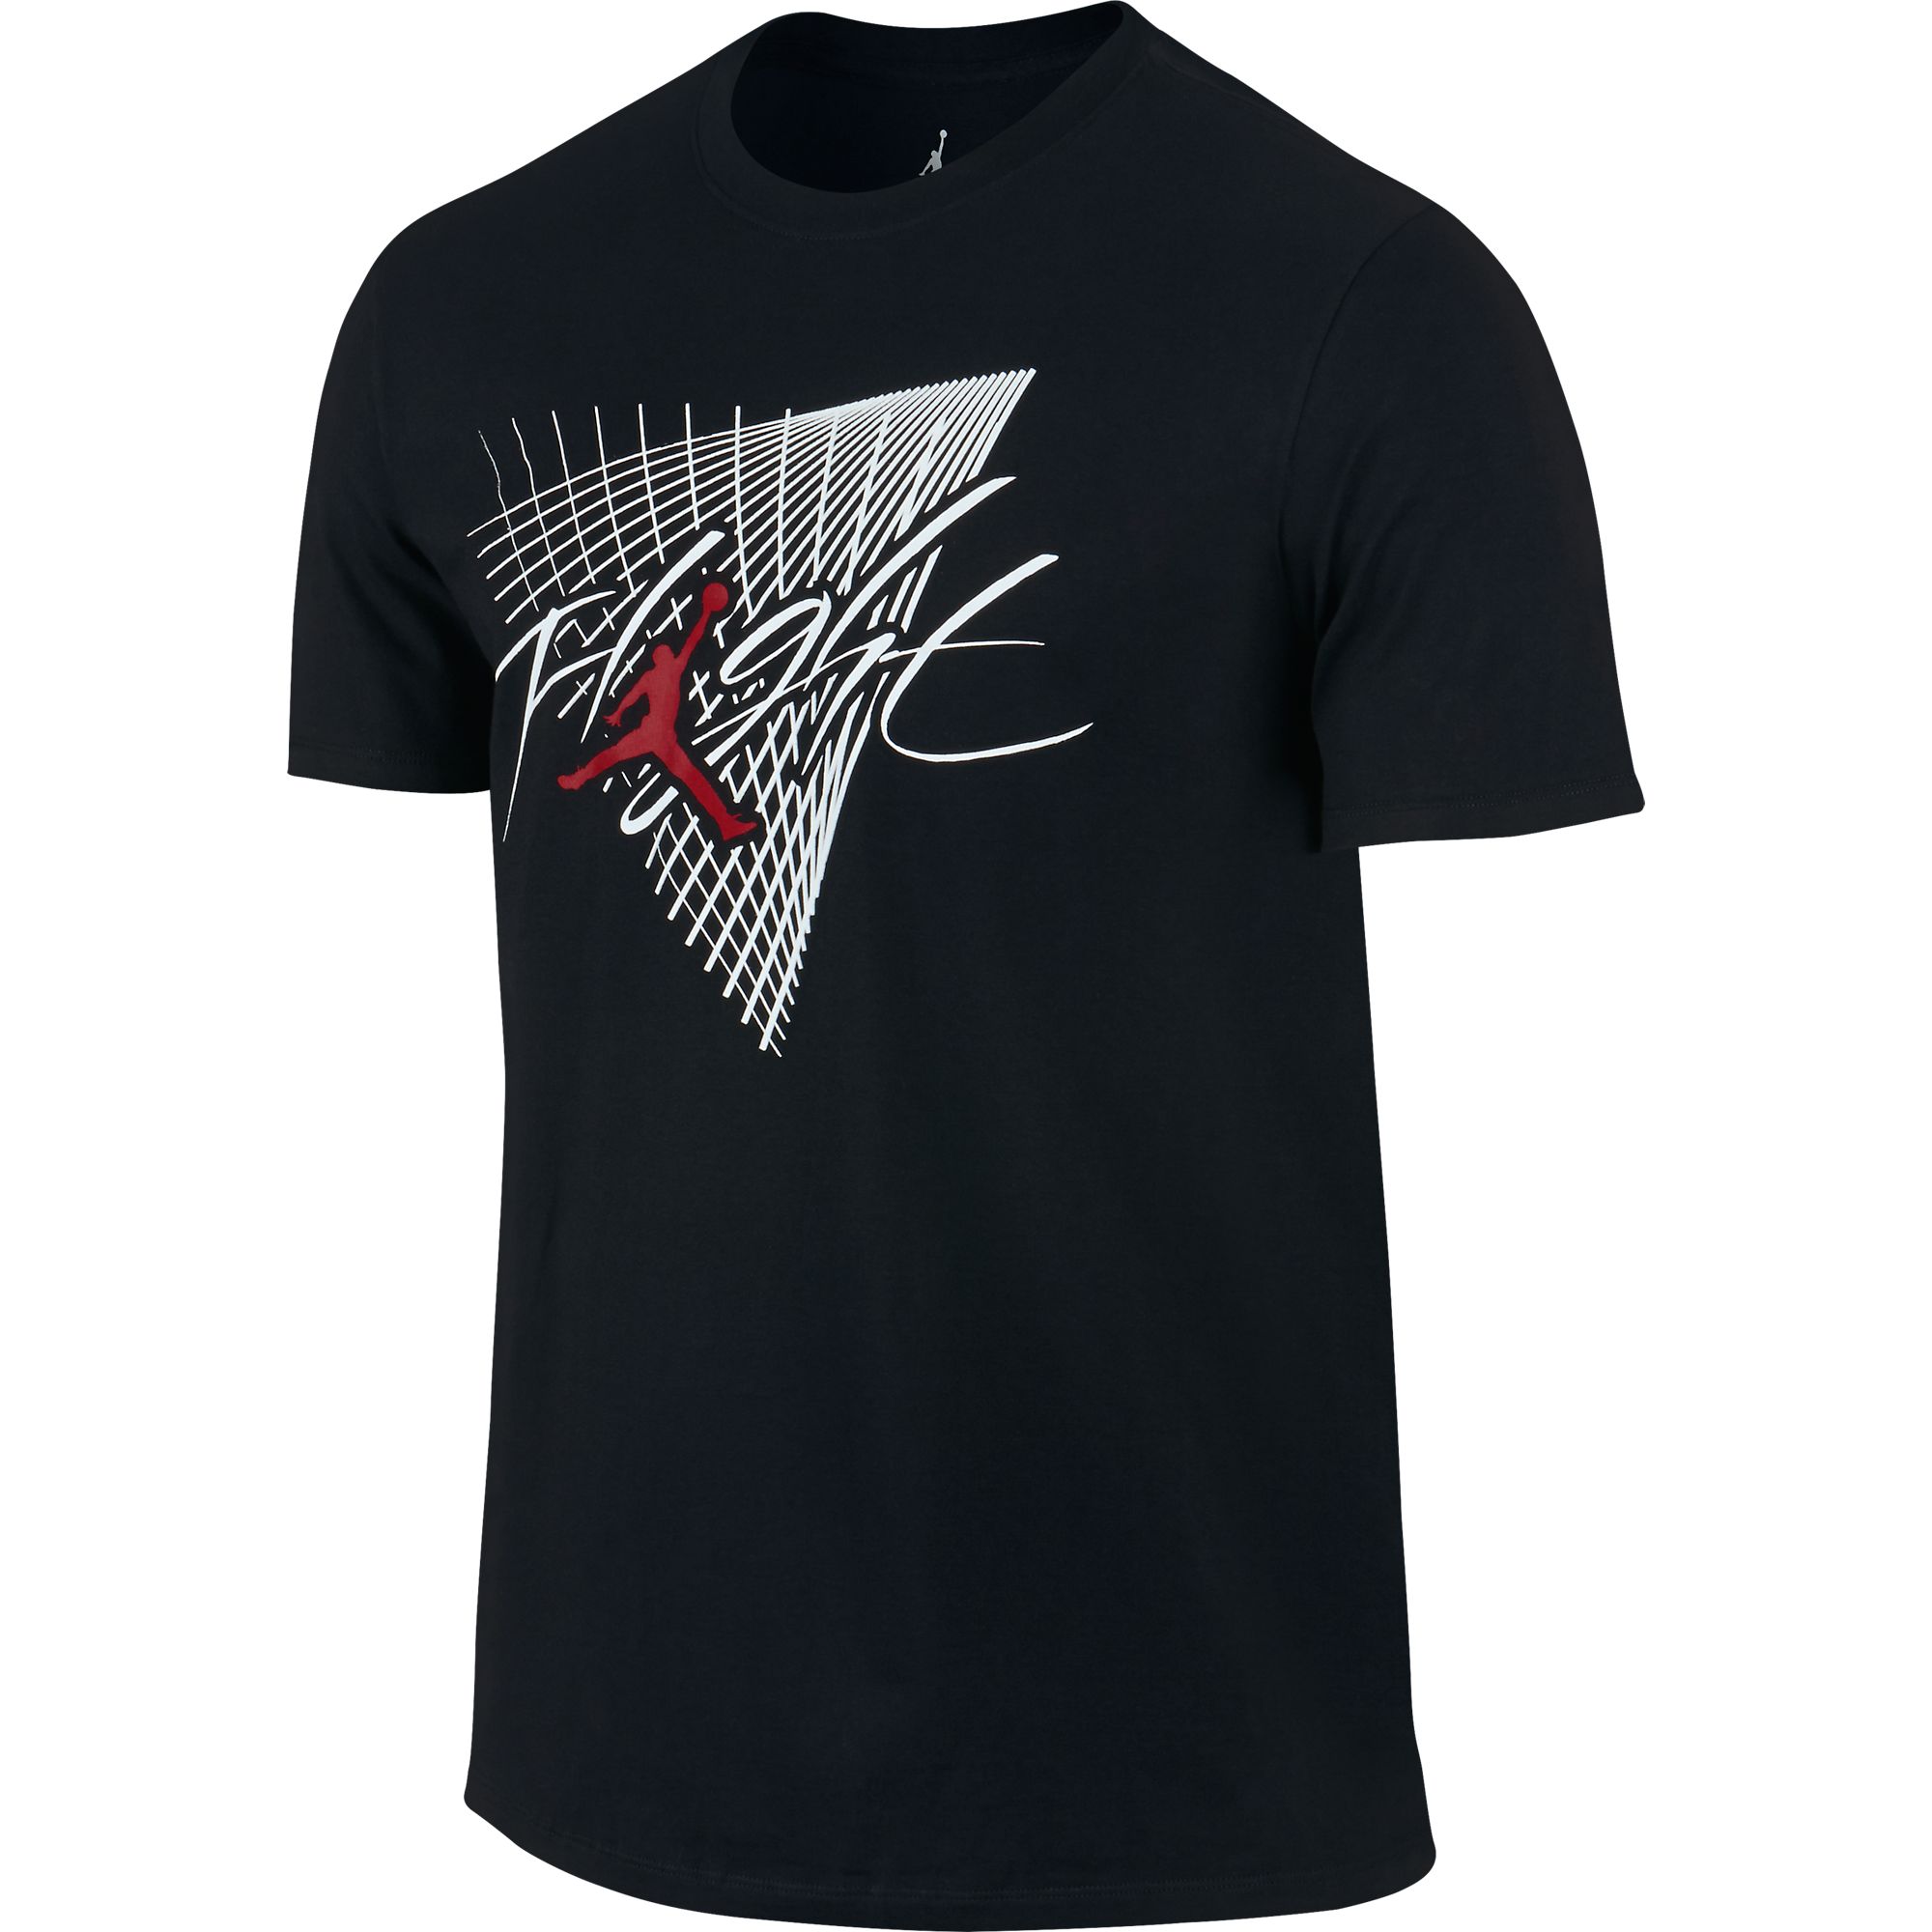 Jordan Men's Flight Grid T-Shirt Black/White/Gym Red 706850-010 | eBay